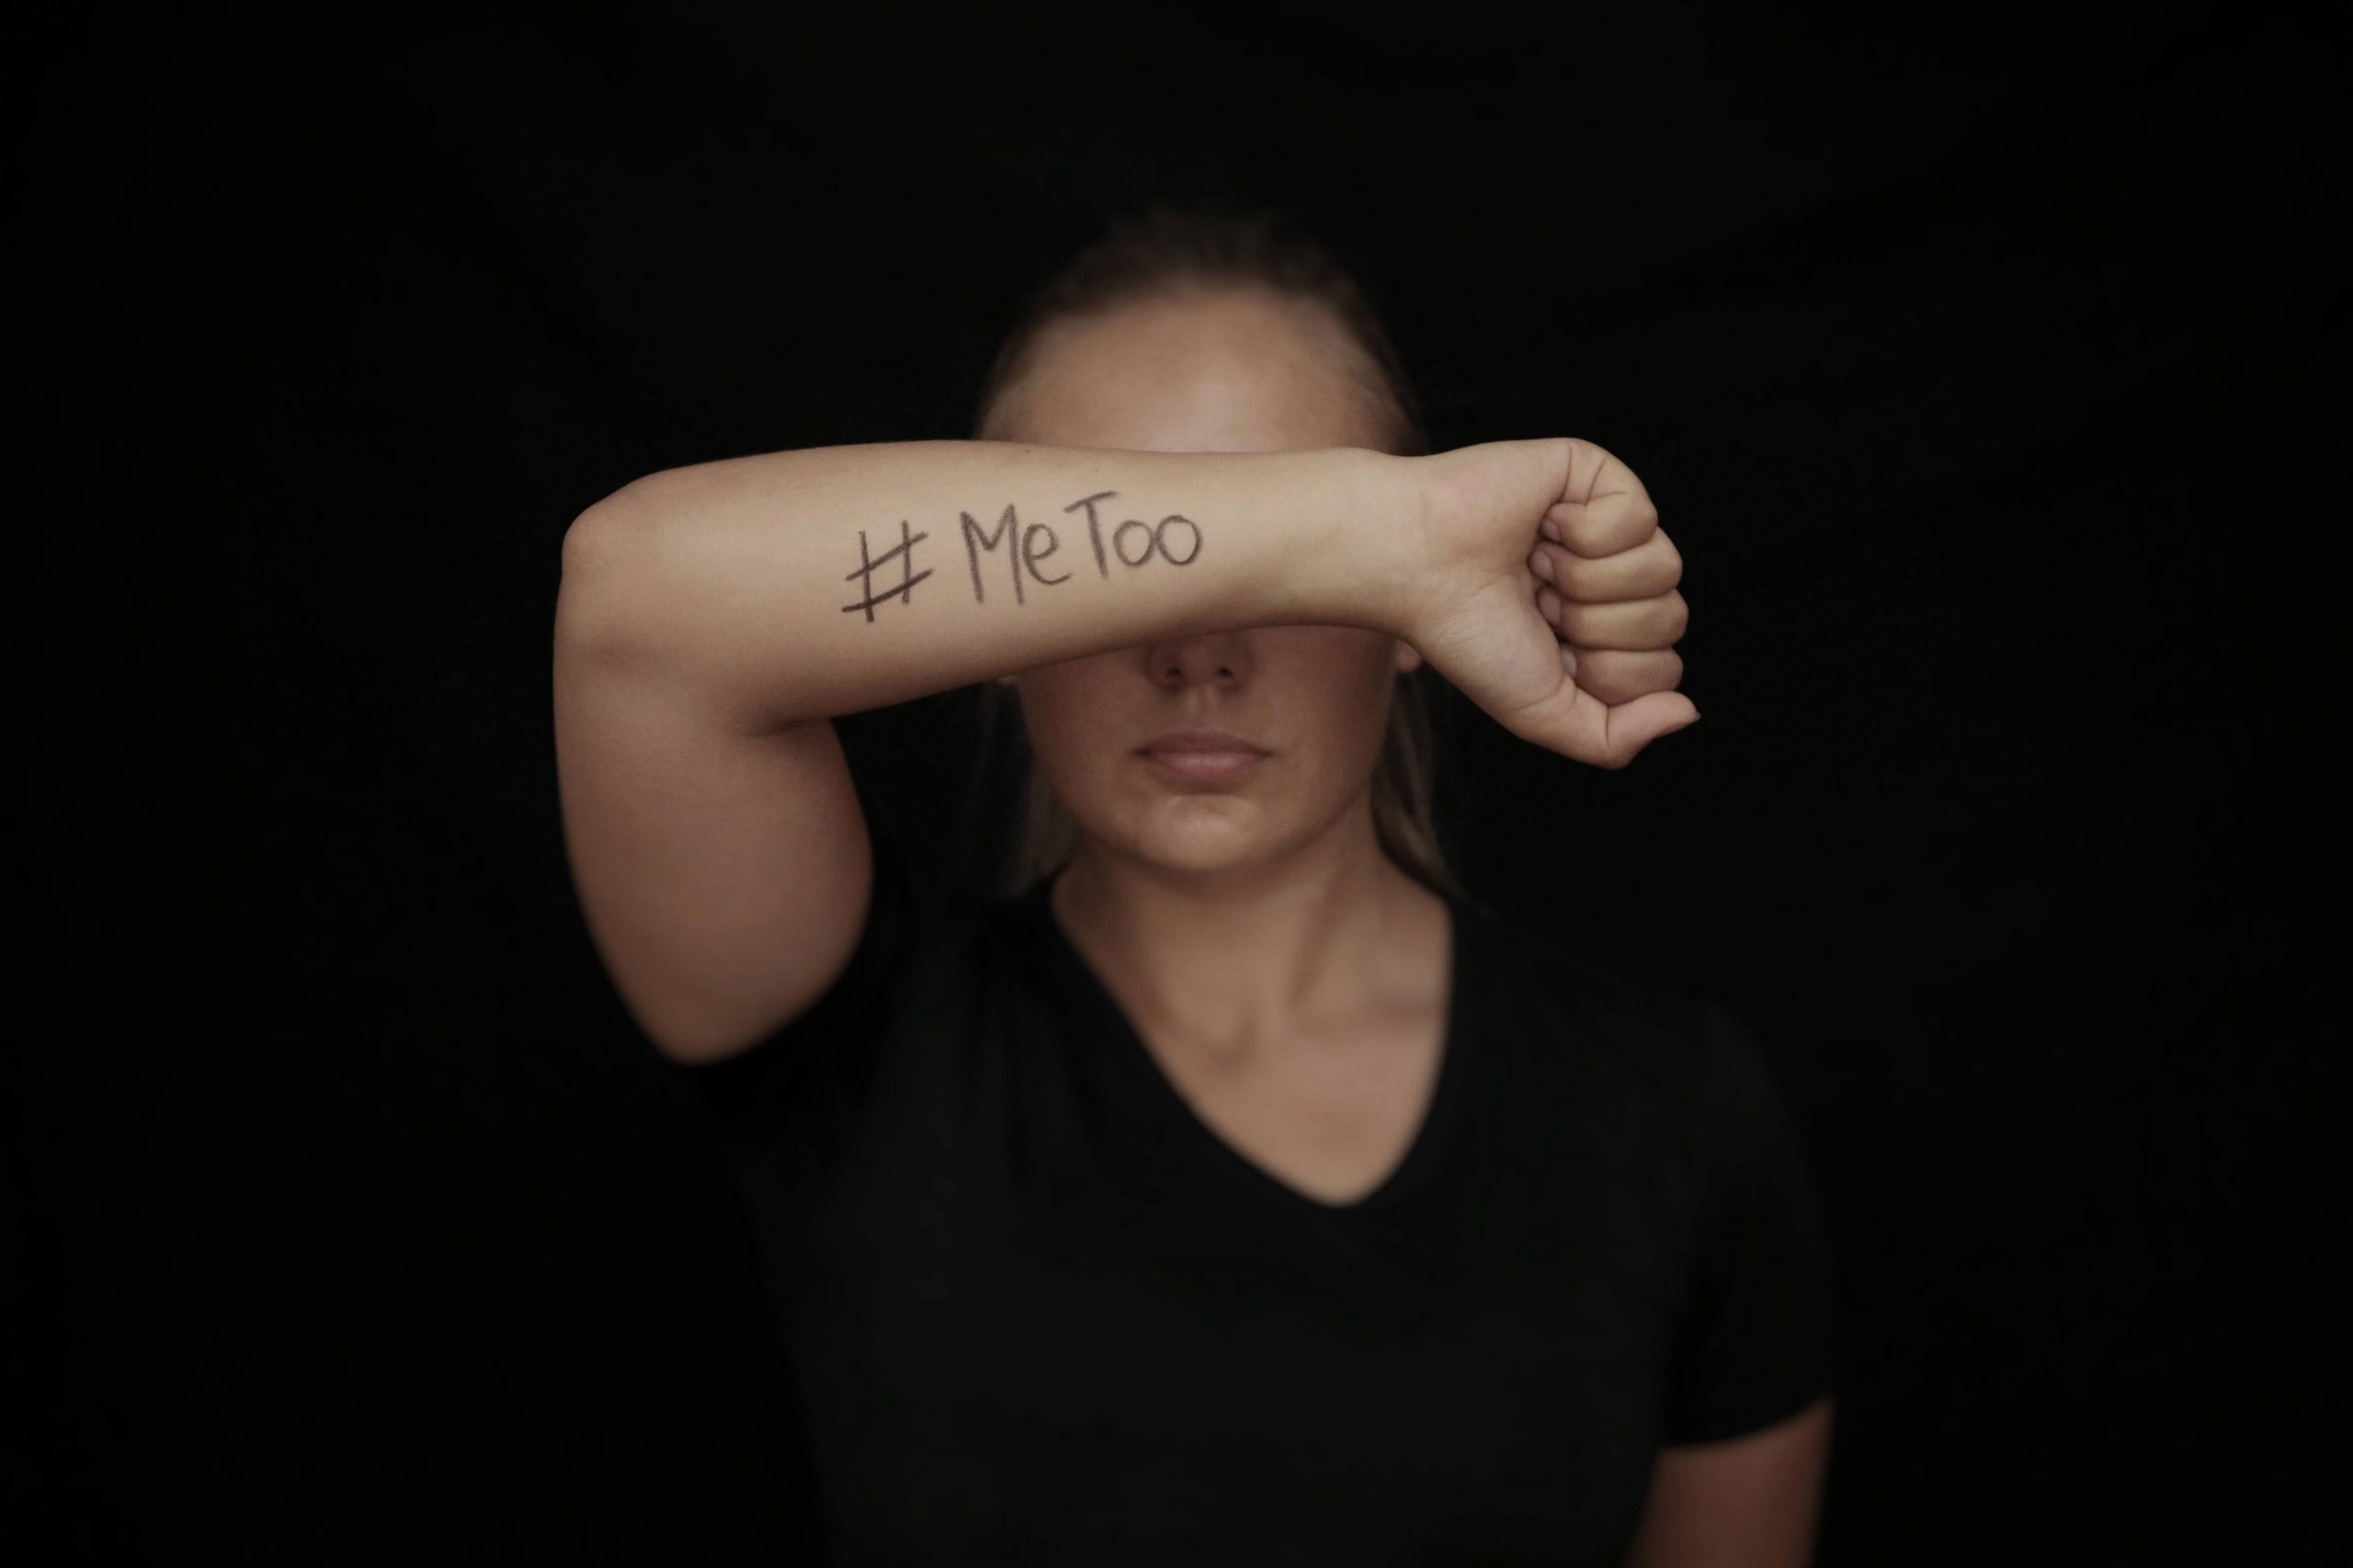 Symbolbild: eine Frau hebt ihren Arm auf dem „#MeToo" zu lesen ist.